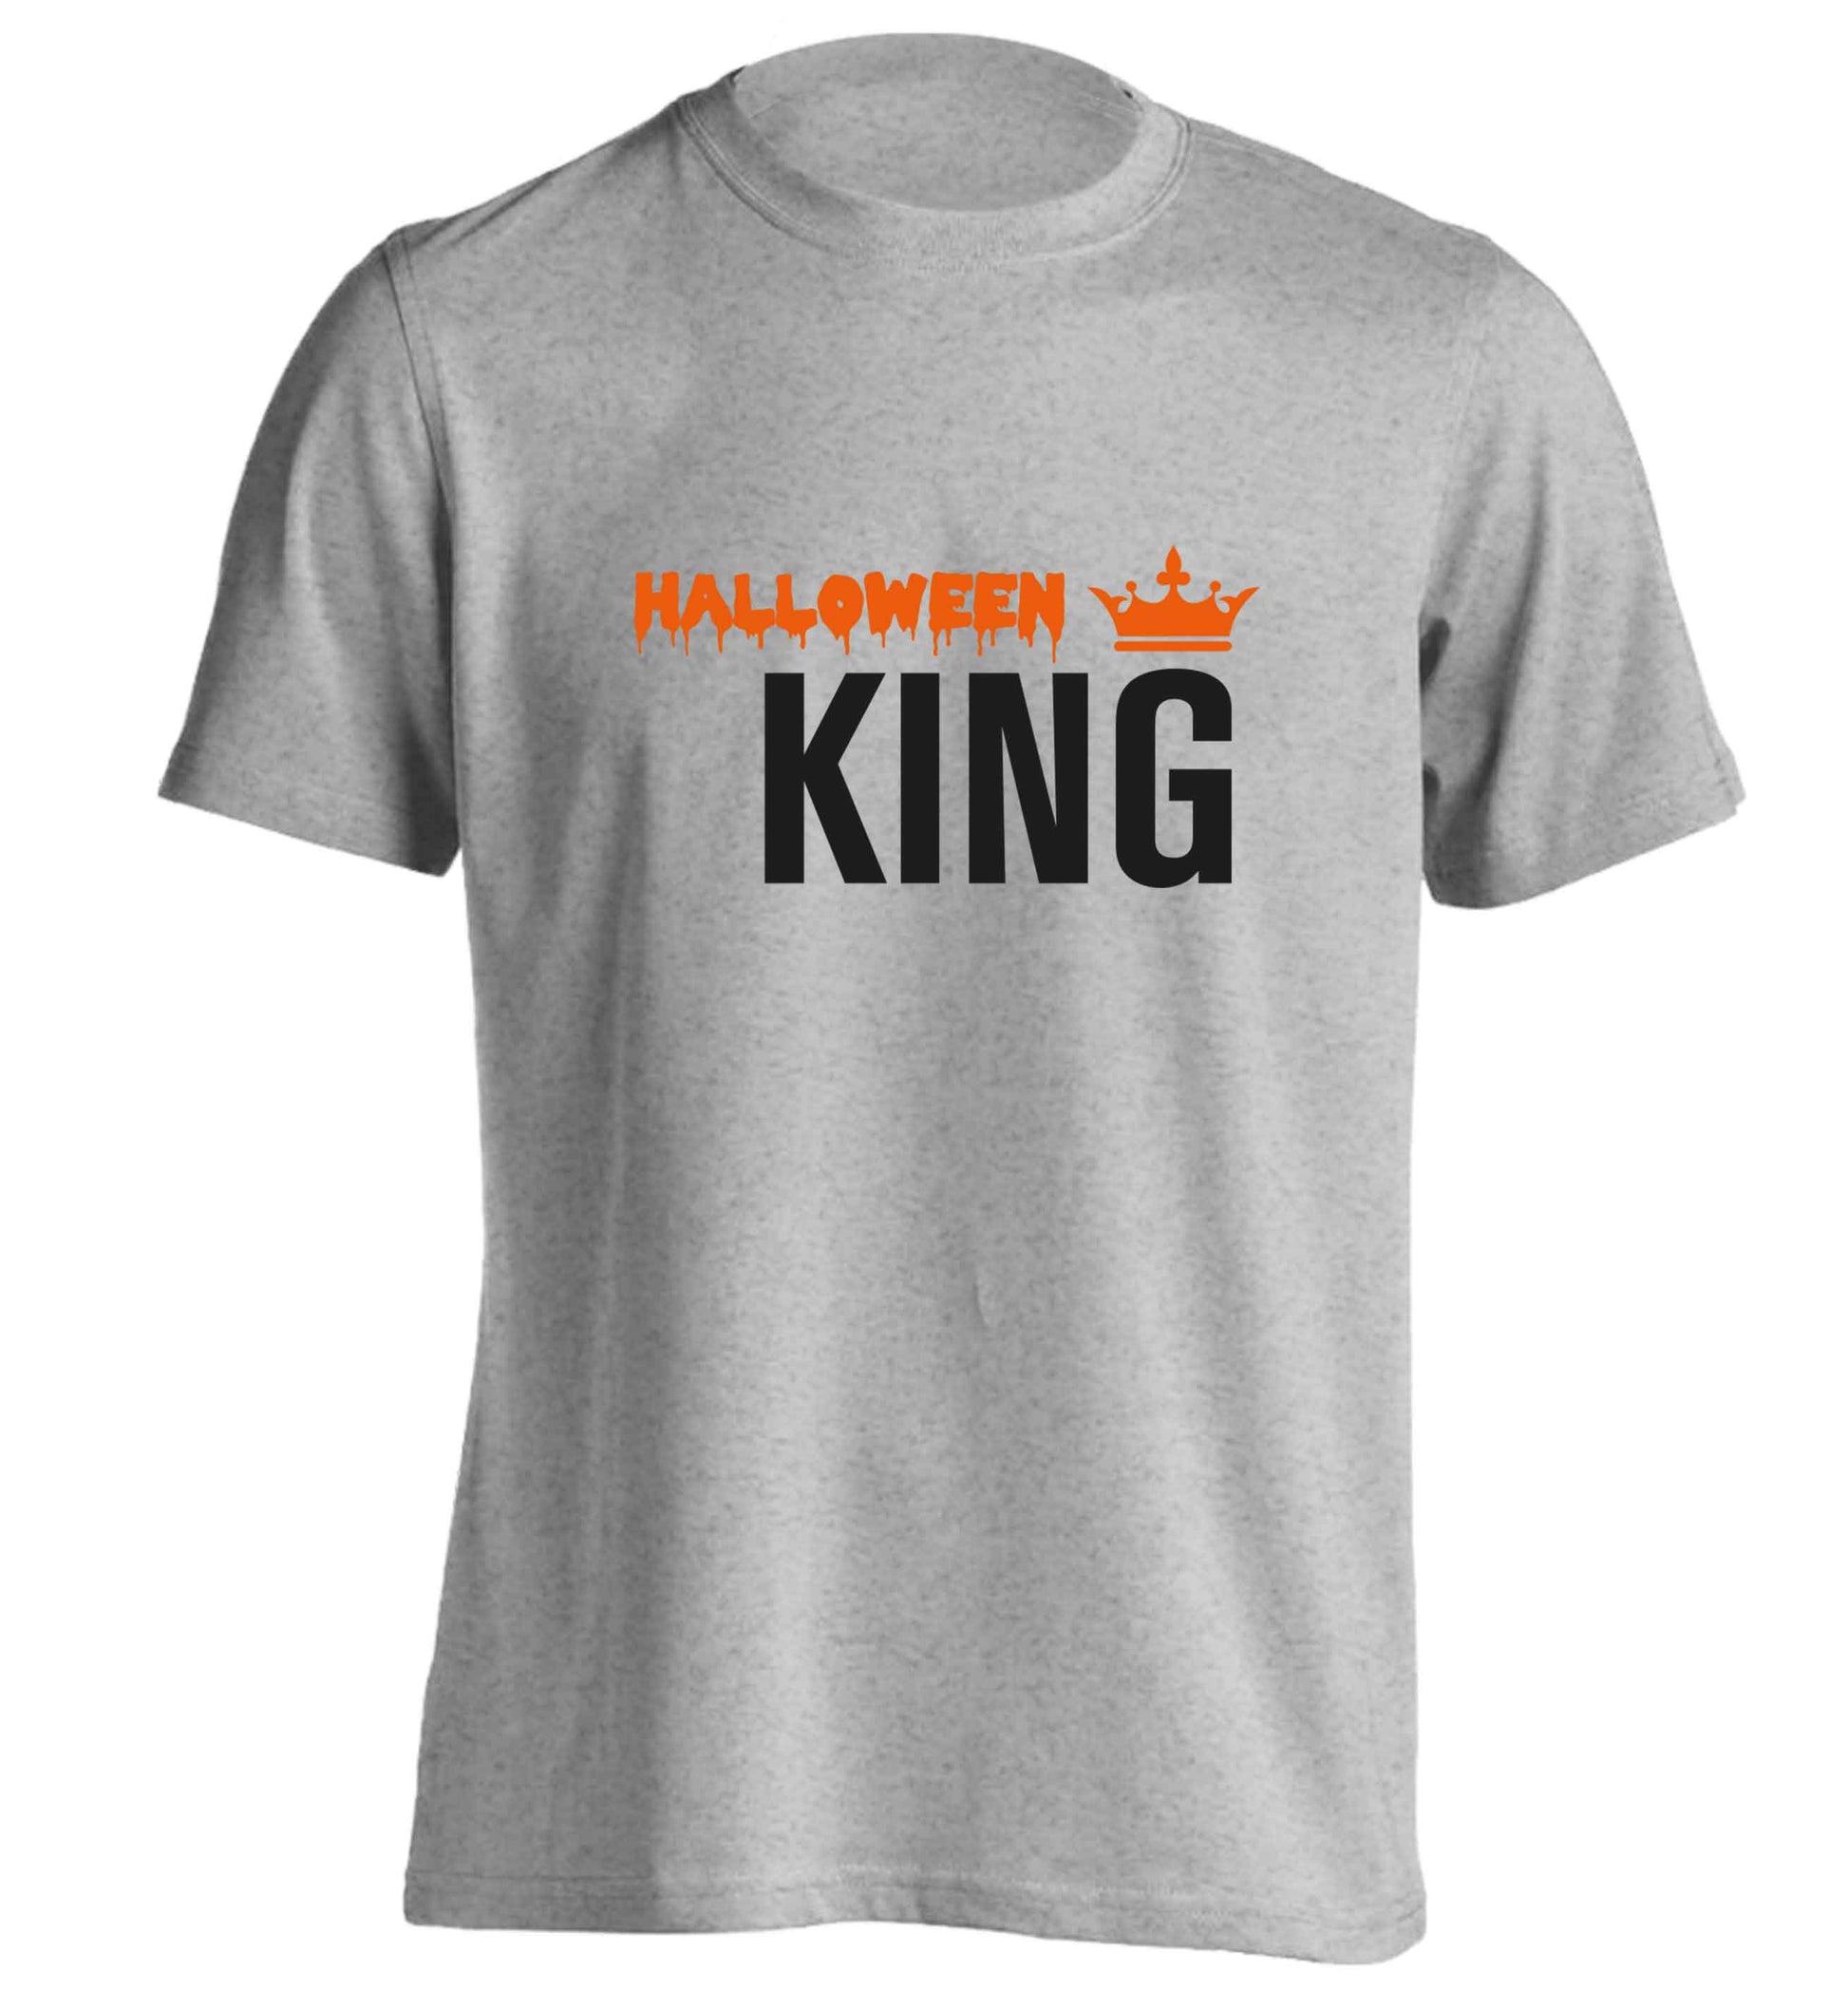 Halloween king adults unisex grey Tshirt 2XL